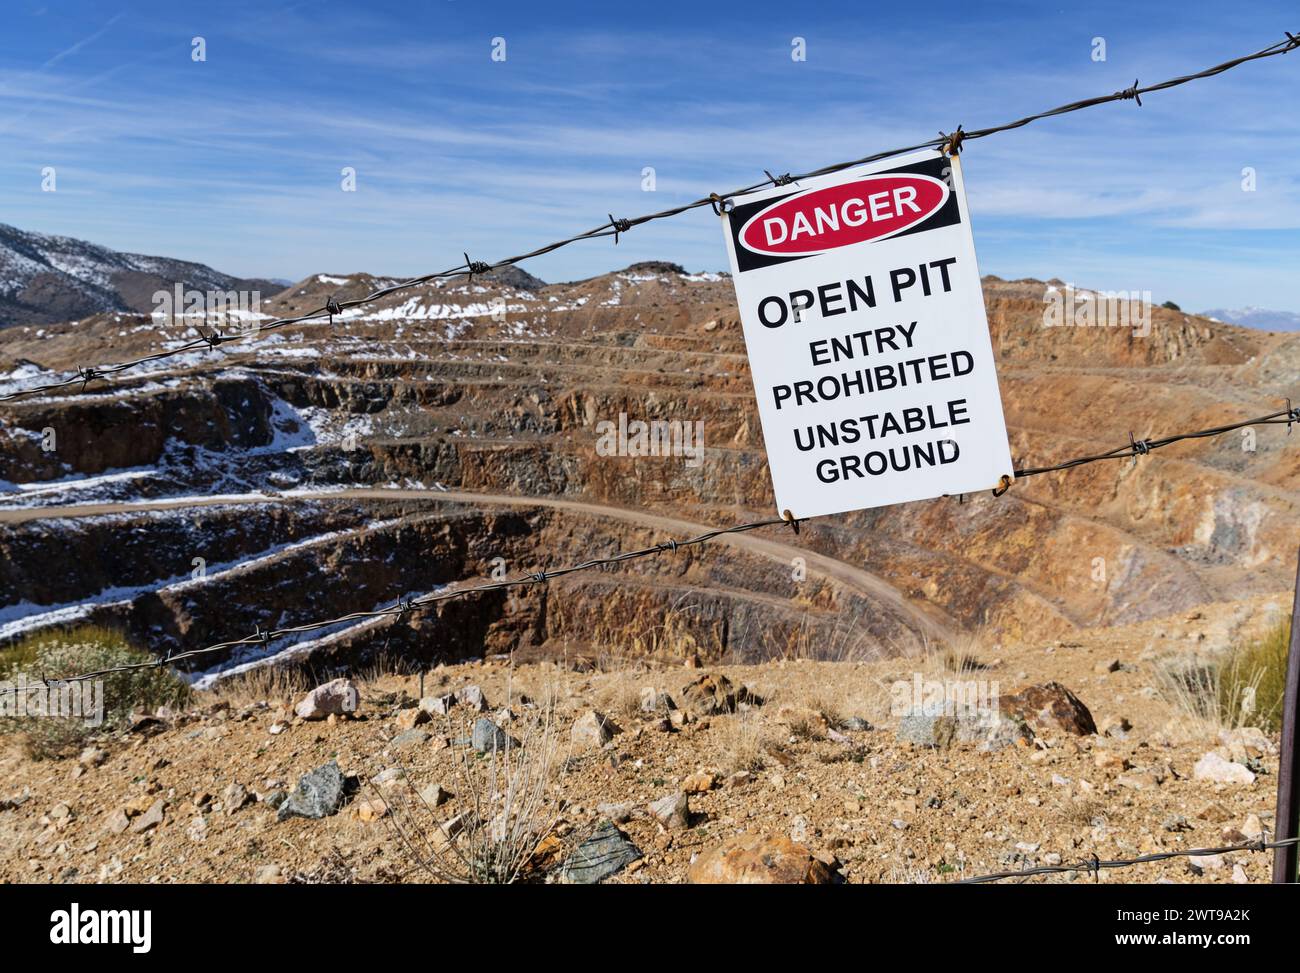 Der Eintritt in die offene Grube ist verboten, das Schild für instabilen Boden am Stacheldrahtzaun über der Goldmine Colosseum Open Pit in der Mojave-Wüste zu untersagen Stockfoto